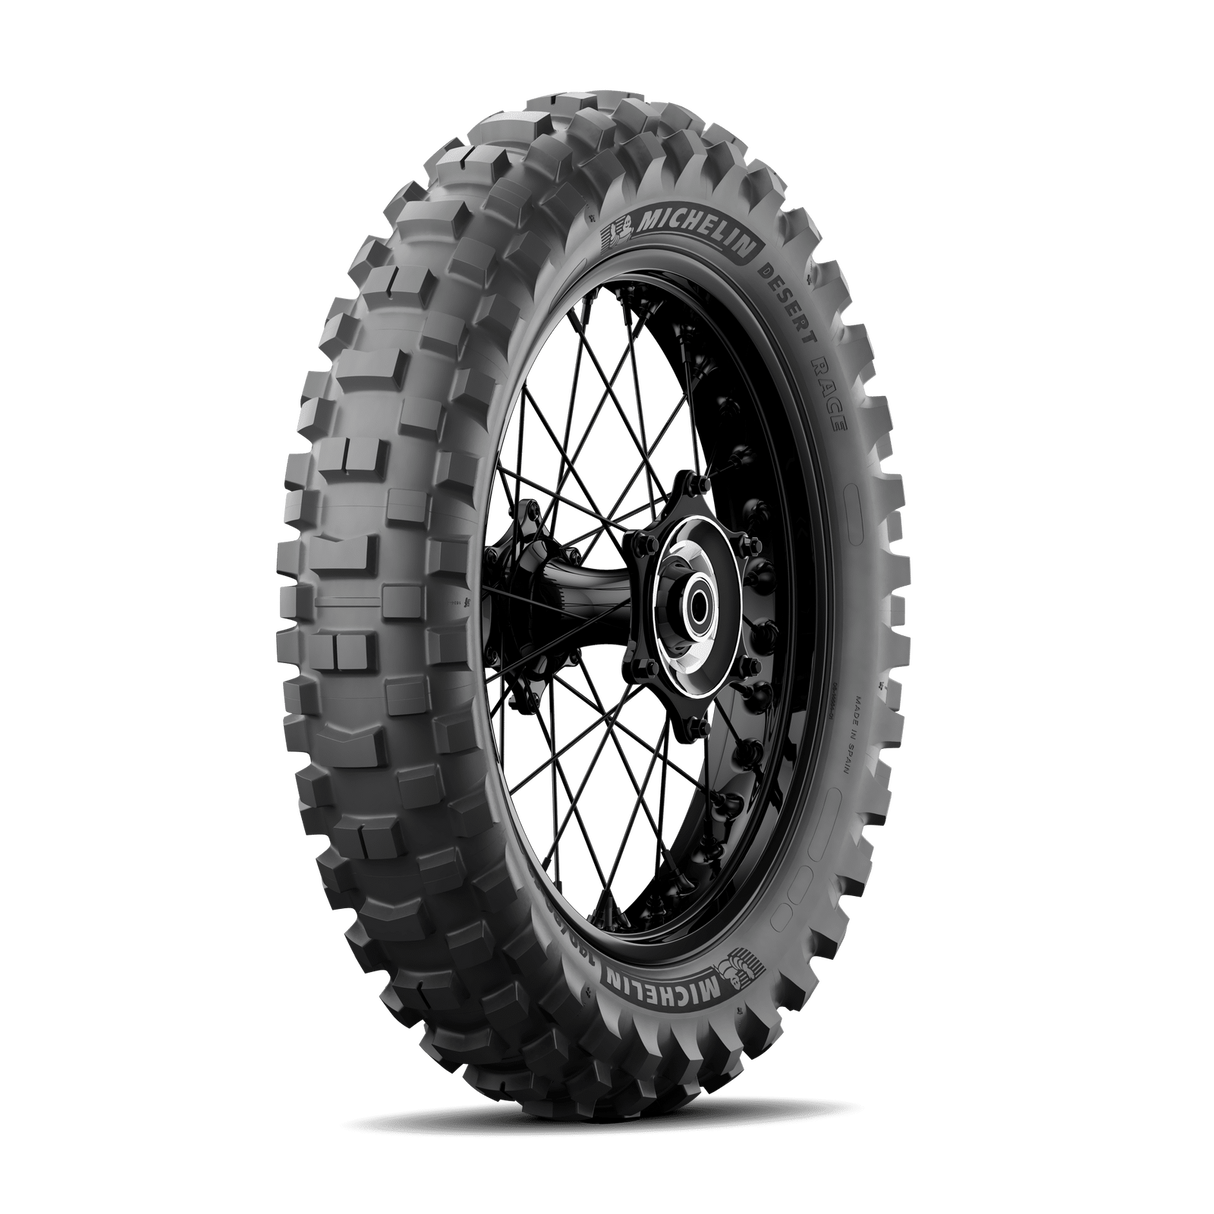 Michelin Desert Race Baja 140/80-18 70R Rear Tyre